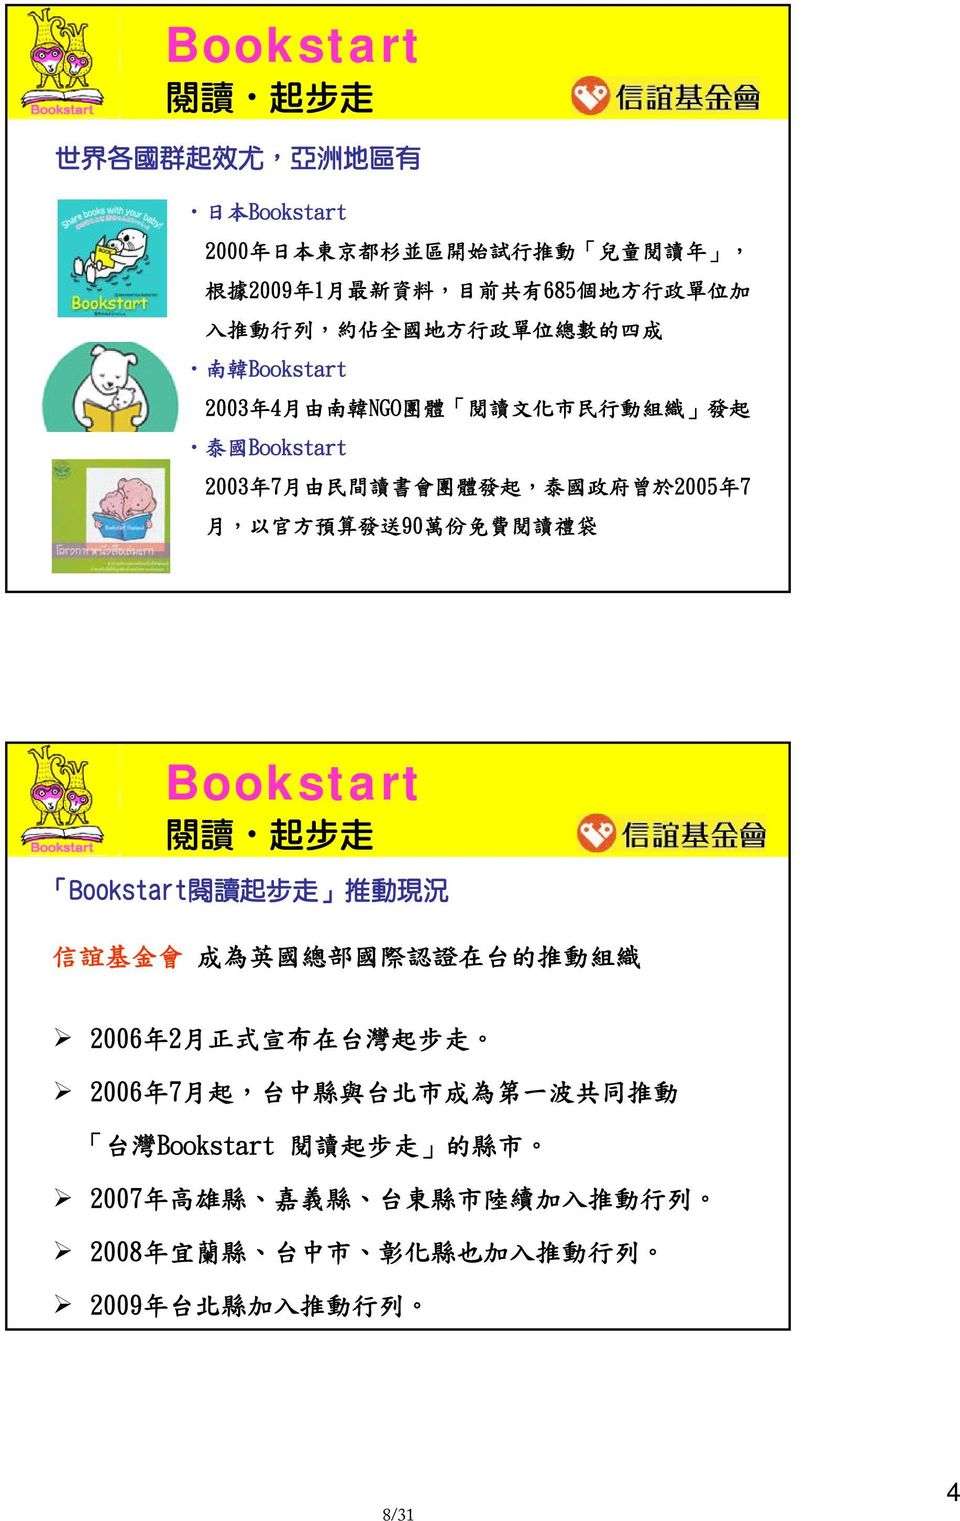 預 算 發 送 90 萬 份 免 費 閱 讀 禮 袋 Bookstart 閱 讀 起 步 走 Bookstart 閱 讀 起 步 走 推 動 現 況 信 誼 基 金 會 成 為 英 國 總 部 國 際 認 證 在 台 的 推 動 組 織 2006 年 2 月 正 式 宣 布 在 台 灣 起 步 走 2006 年 7 月 起, 台 中 縣